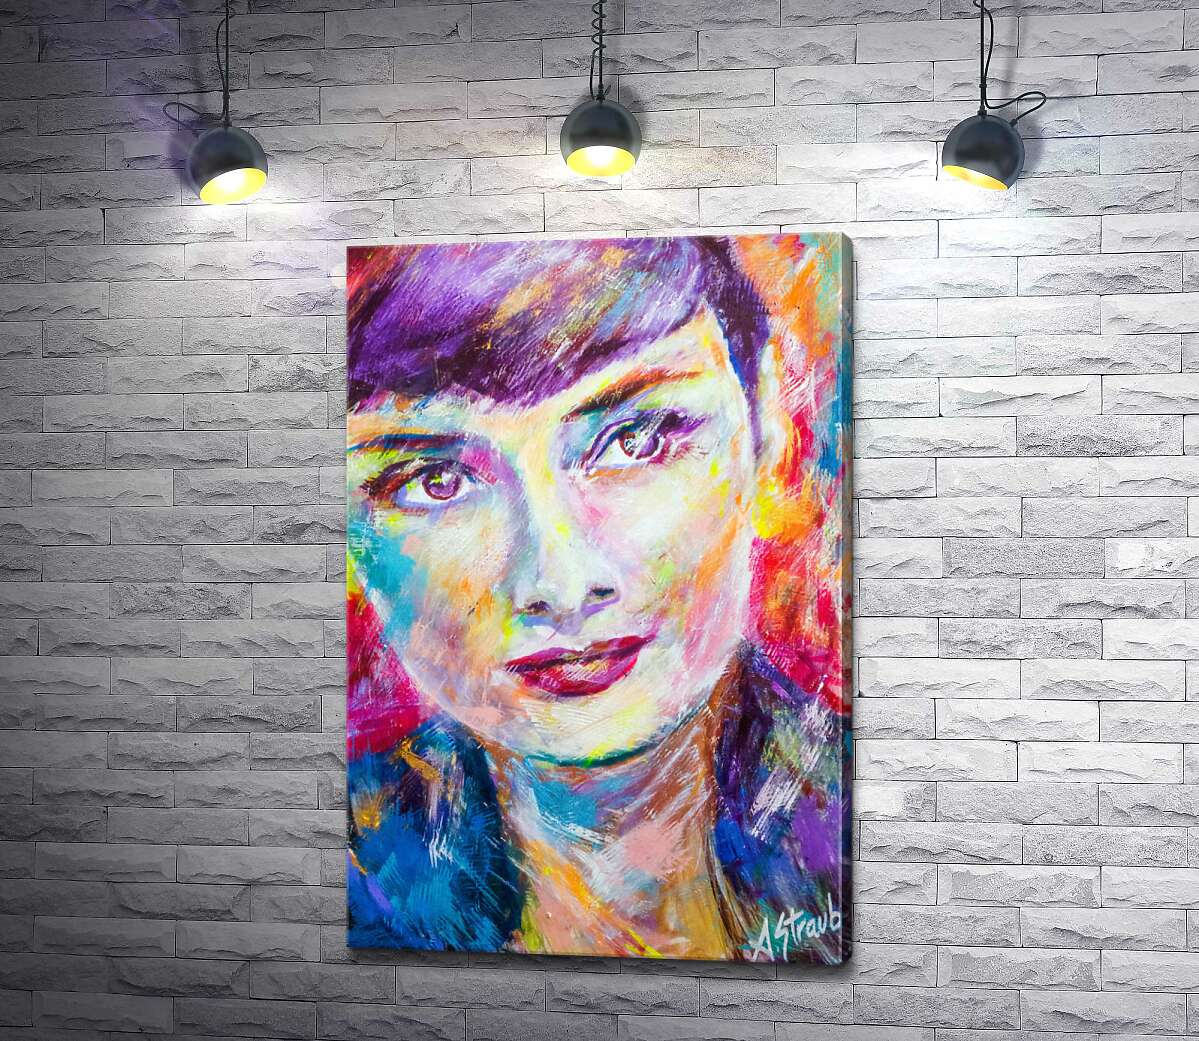 картина Поєднання барв на портреті Одрі Гепберн (Audrey Hepburn)